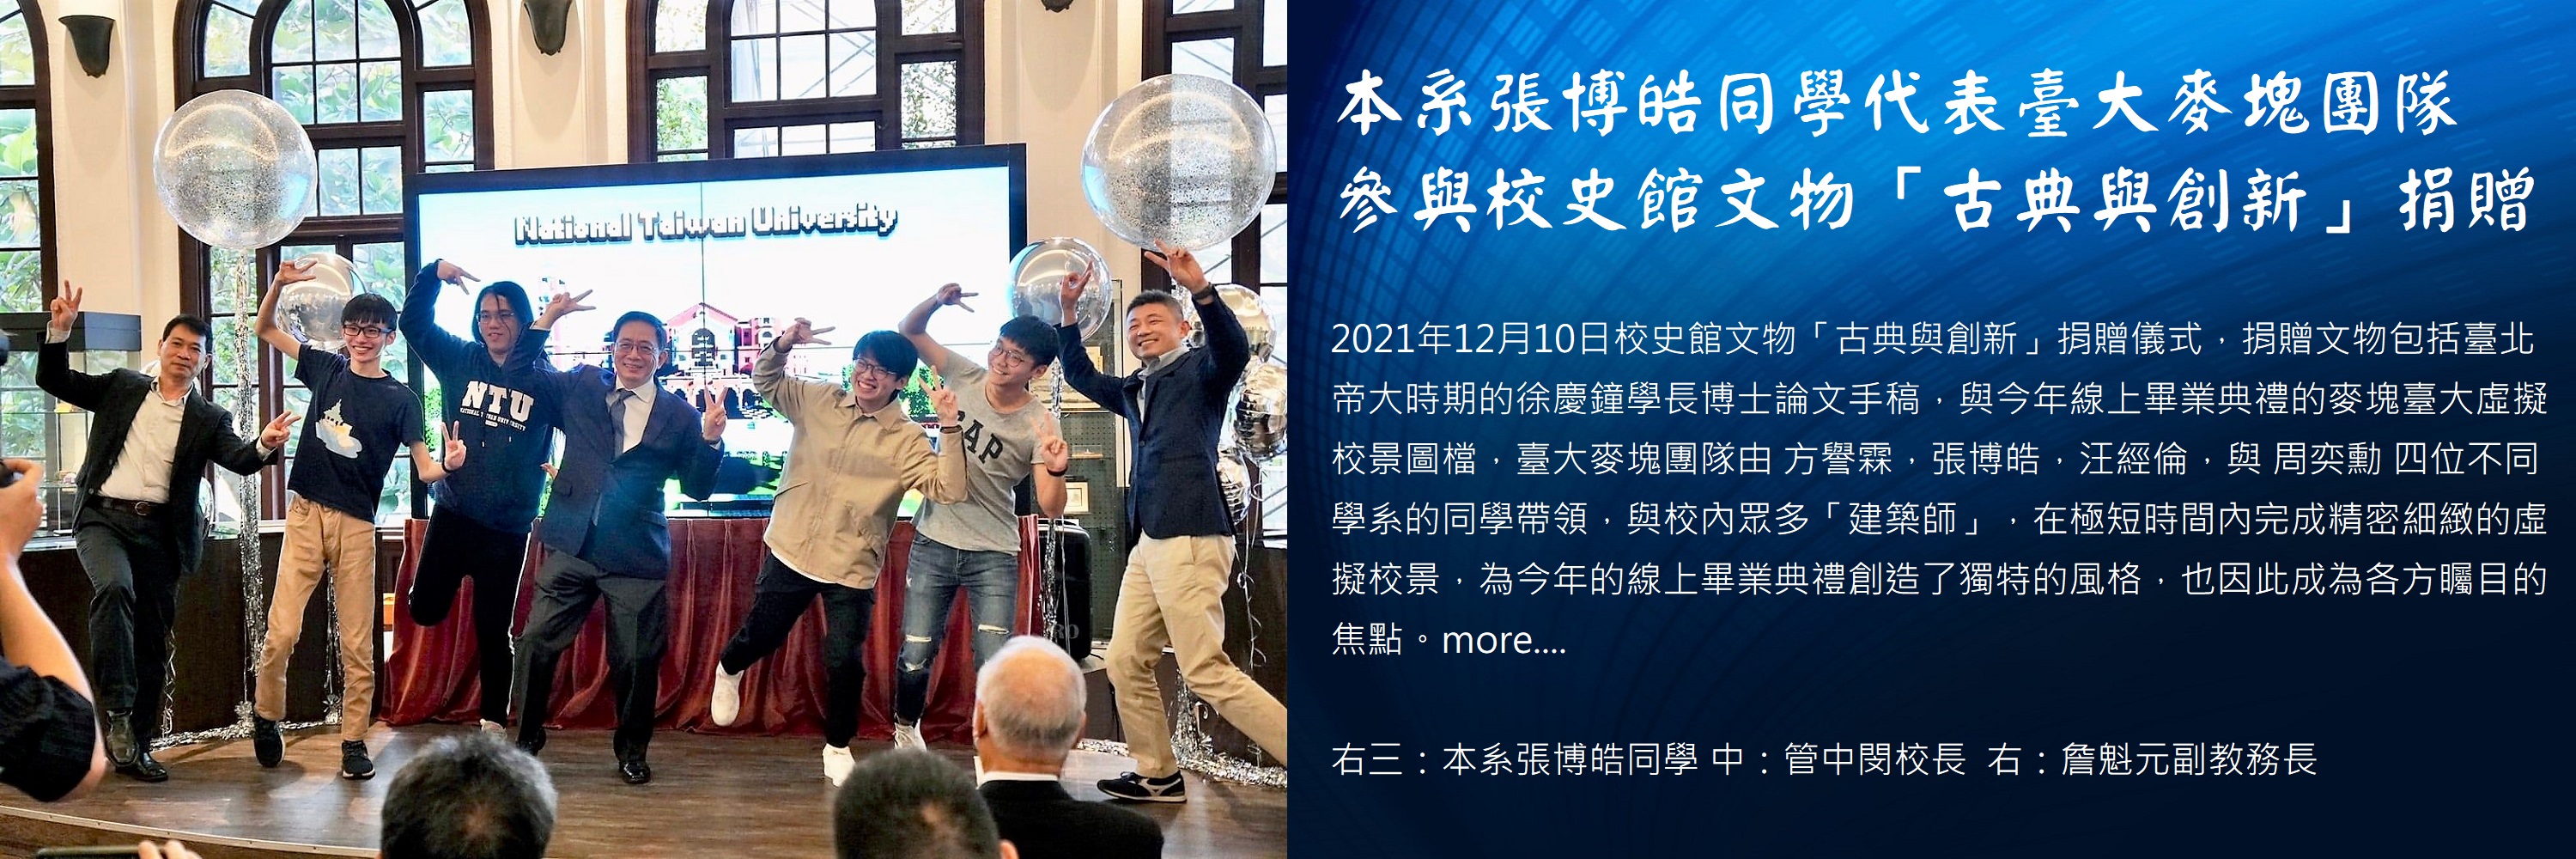 張博皓同學代表臺大麥塊團隊 參與校史館文物「古典與創新」捐贈